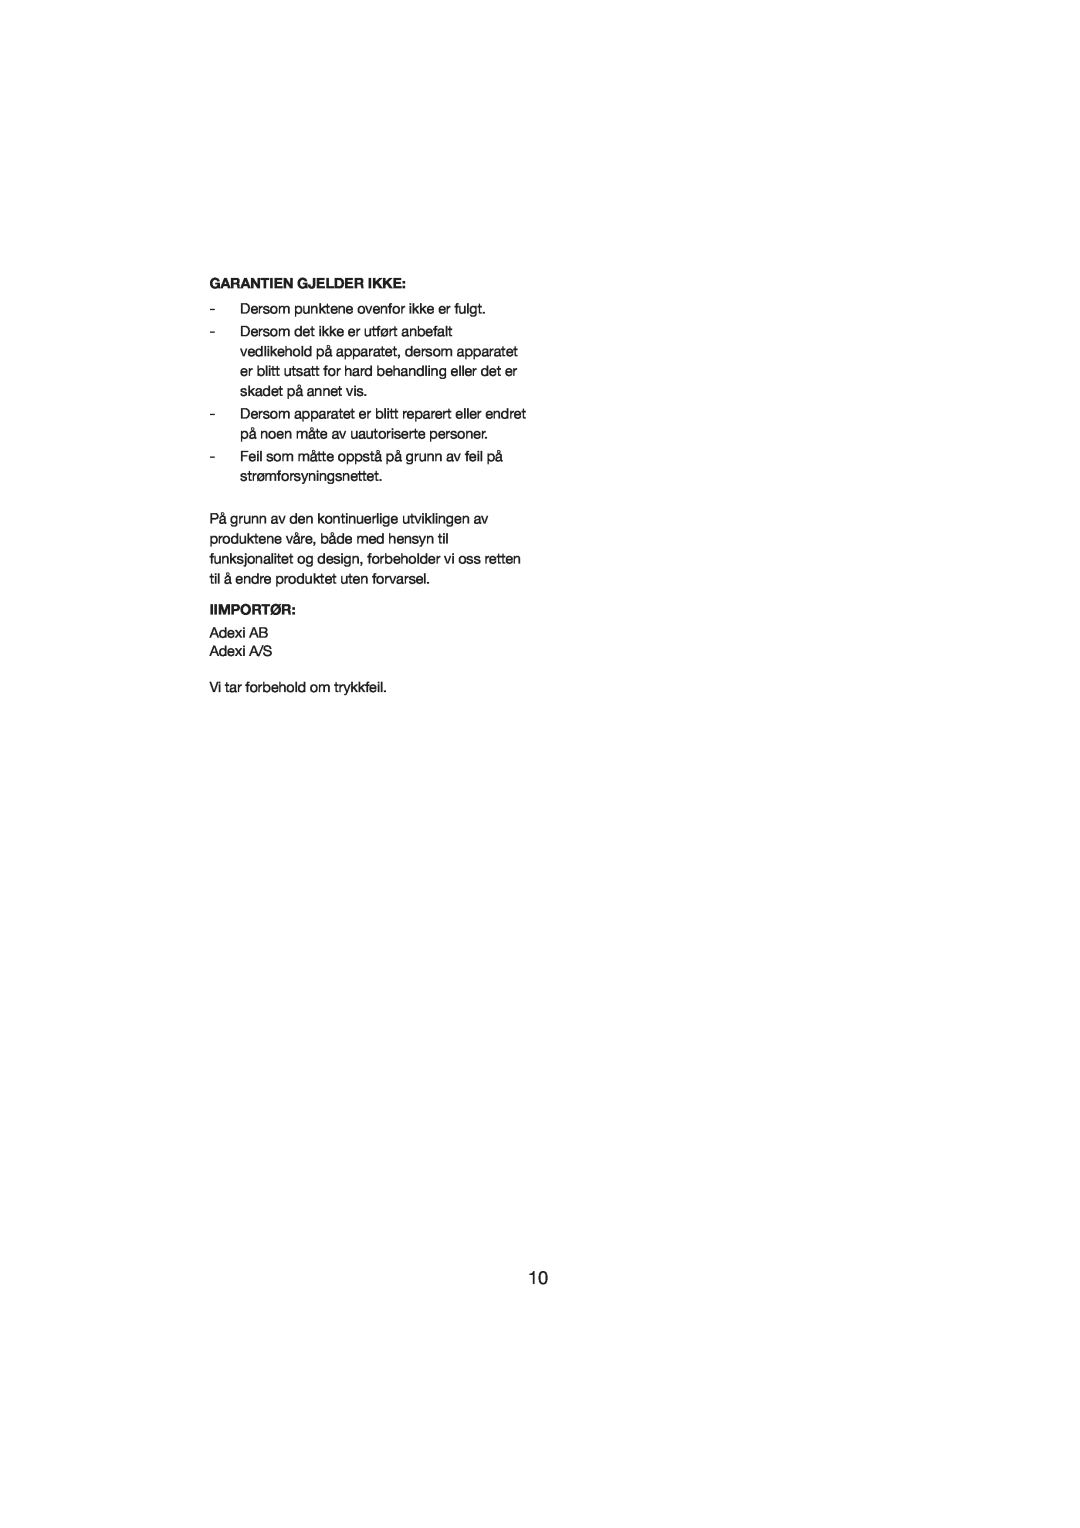 Melissa 245-021 manual Garantien Gjelder Ikke, Iimportør 